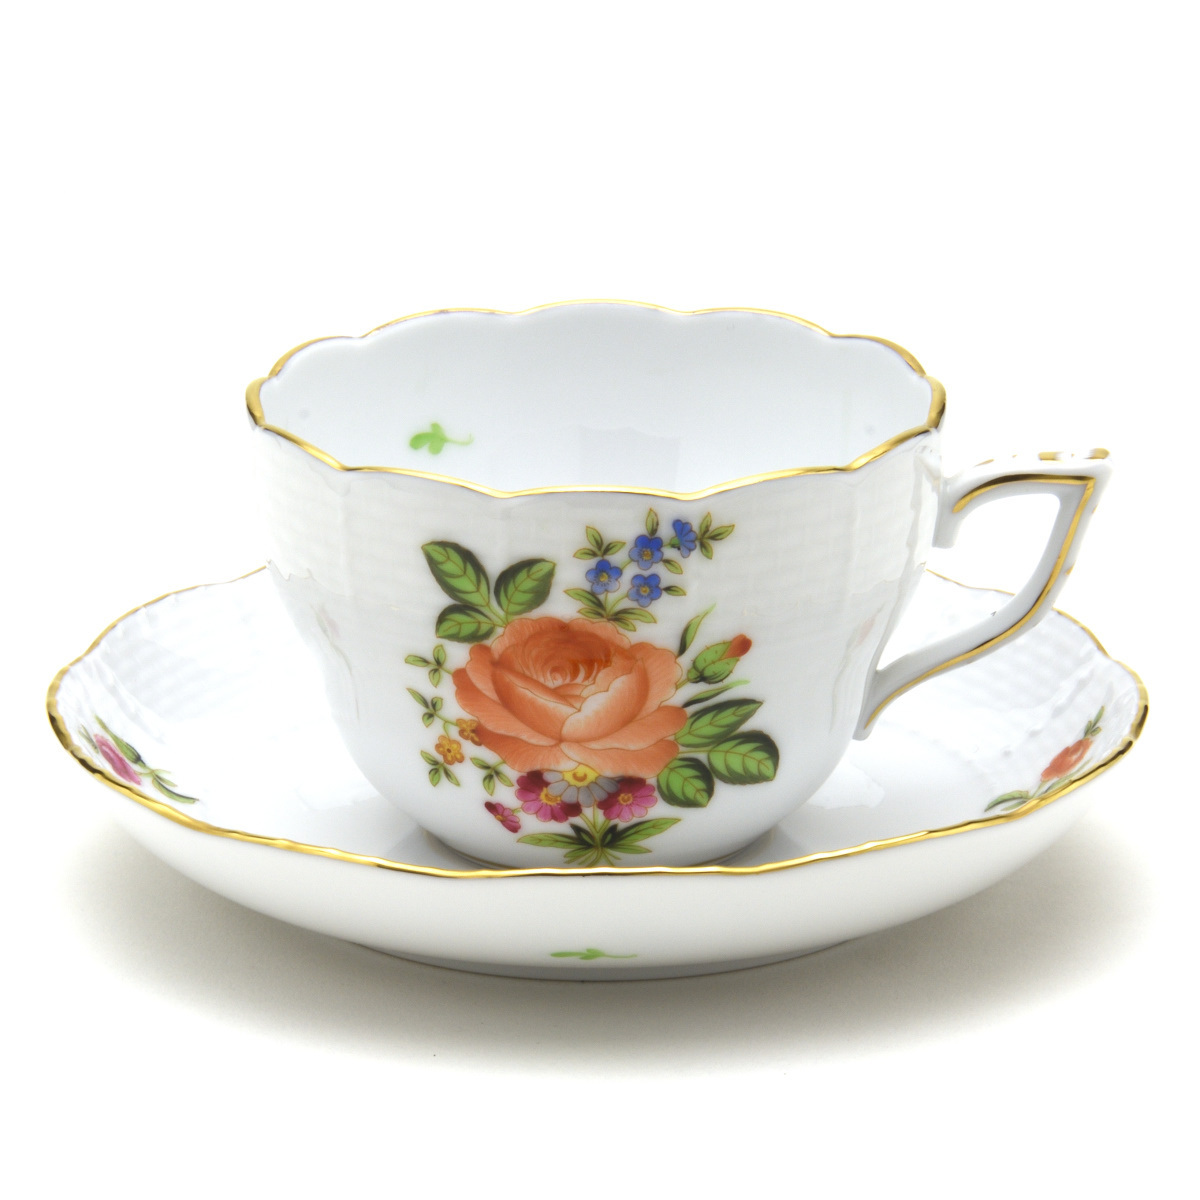 赫伦德多用途杯碟手绘西餐餐具小玫瑰花束/橙子咖啡茶杯匈牙利制造全新, 茶具, 杯子和碟子, 咖啡, 无论是茶还是茶